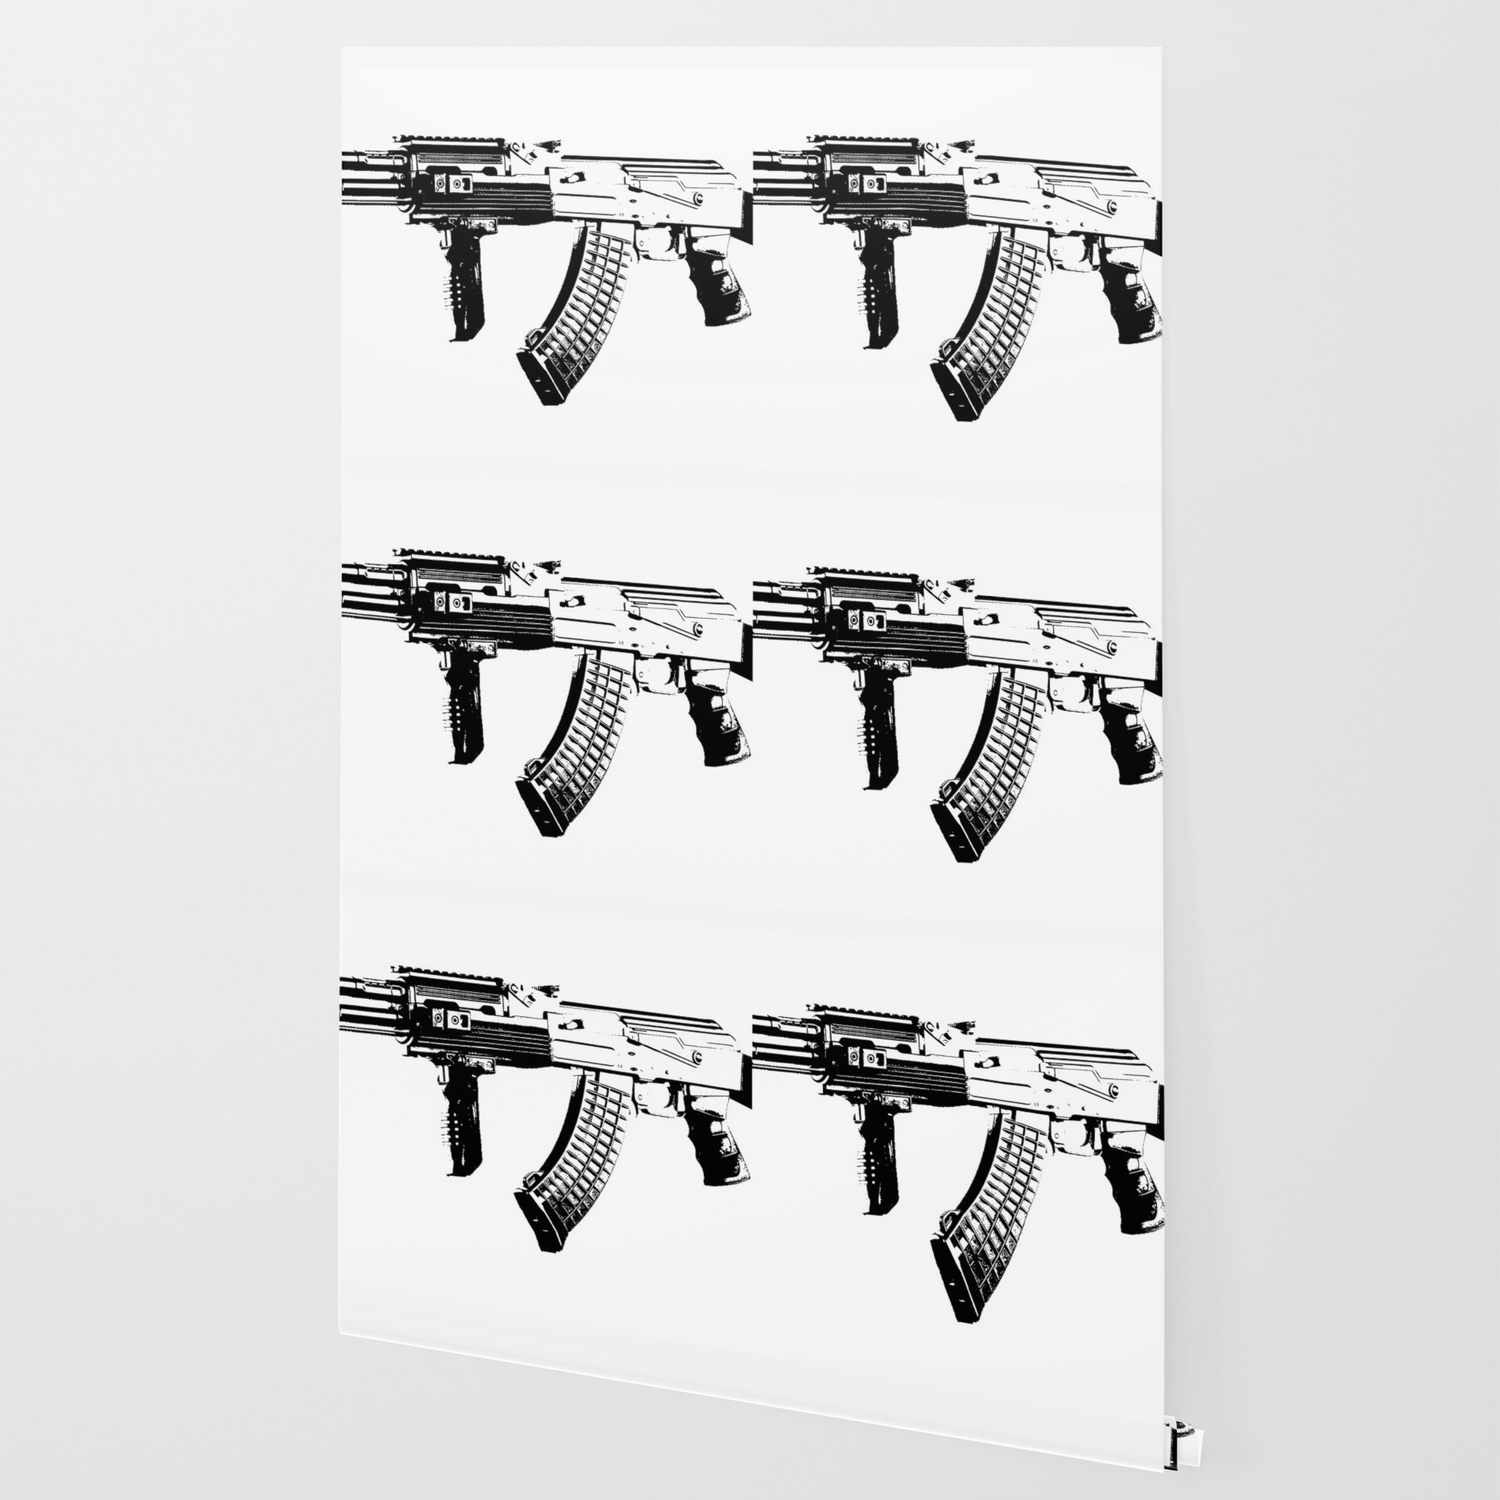 AK-47 Wallpaper by rchaem | Society6